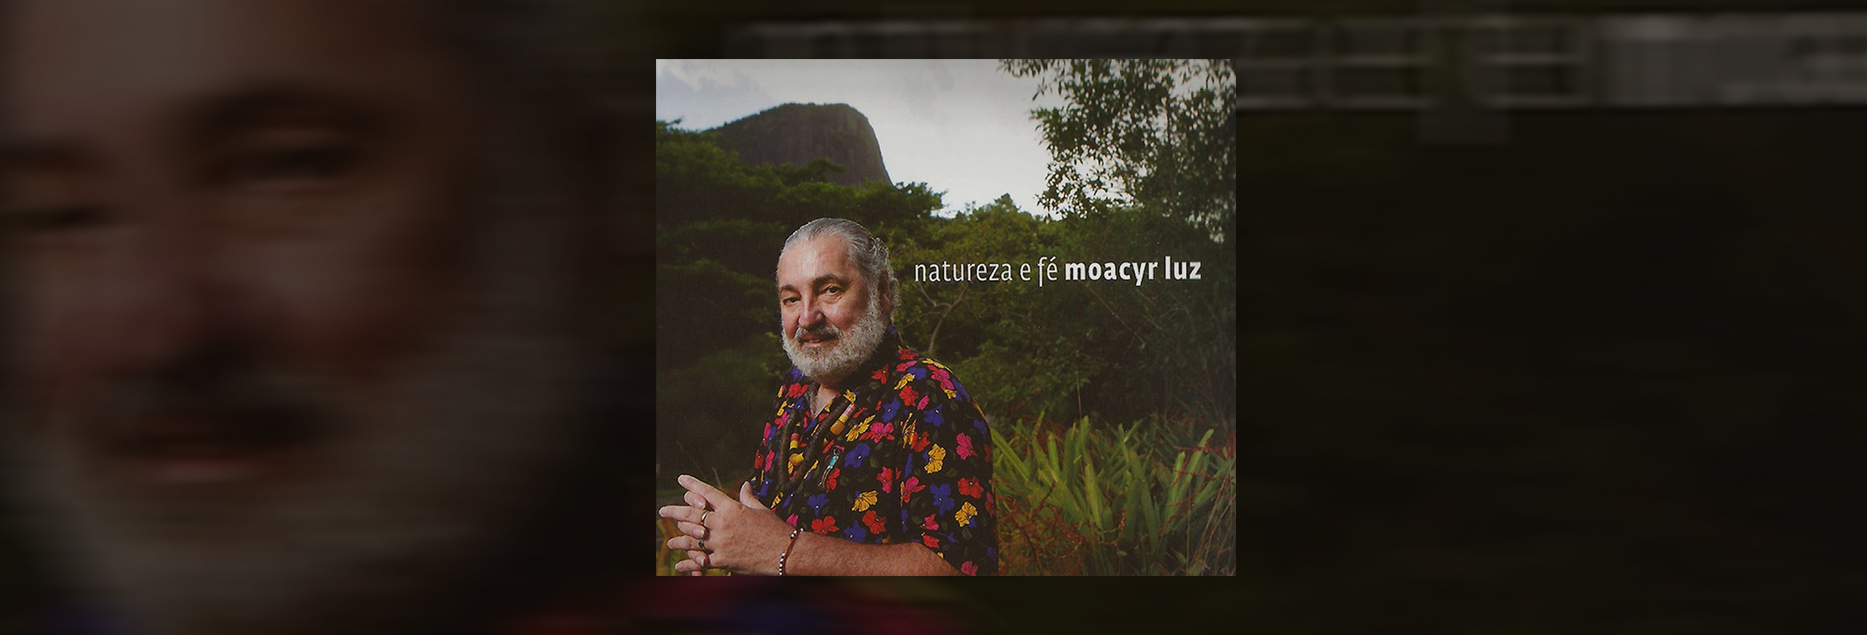 Moacyr Luz  lança “Natureza e Fé”, álbum de inéditas